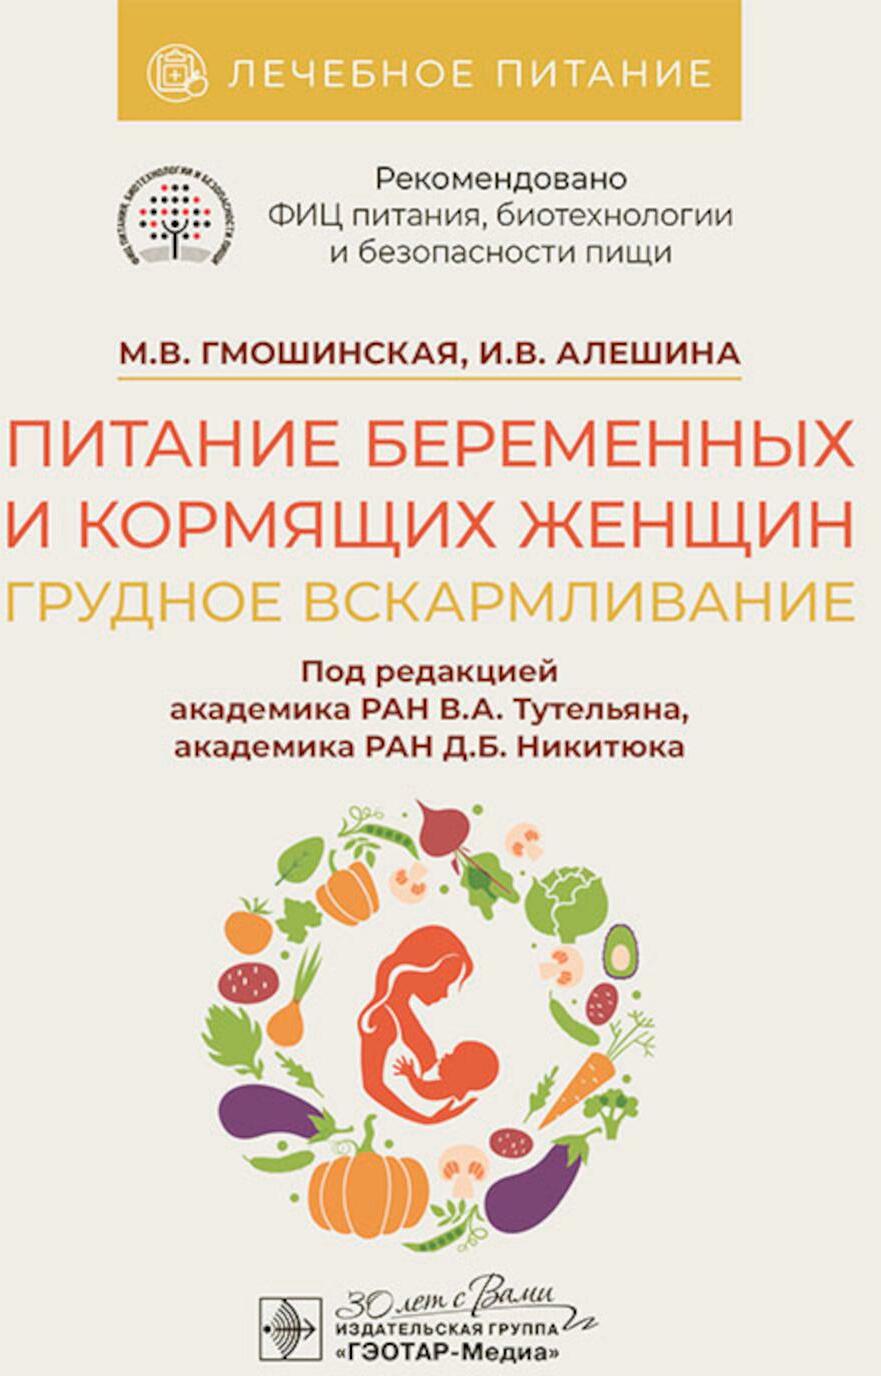 Питание беременных и кормящих женщин. Грудное вскармливание